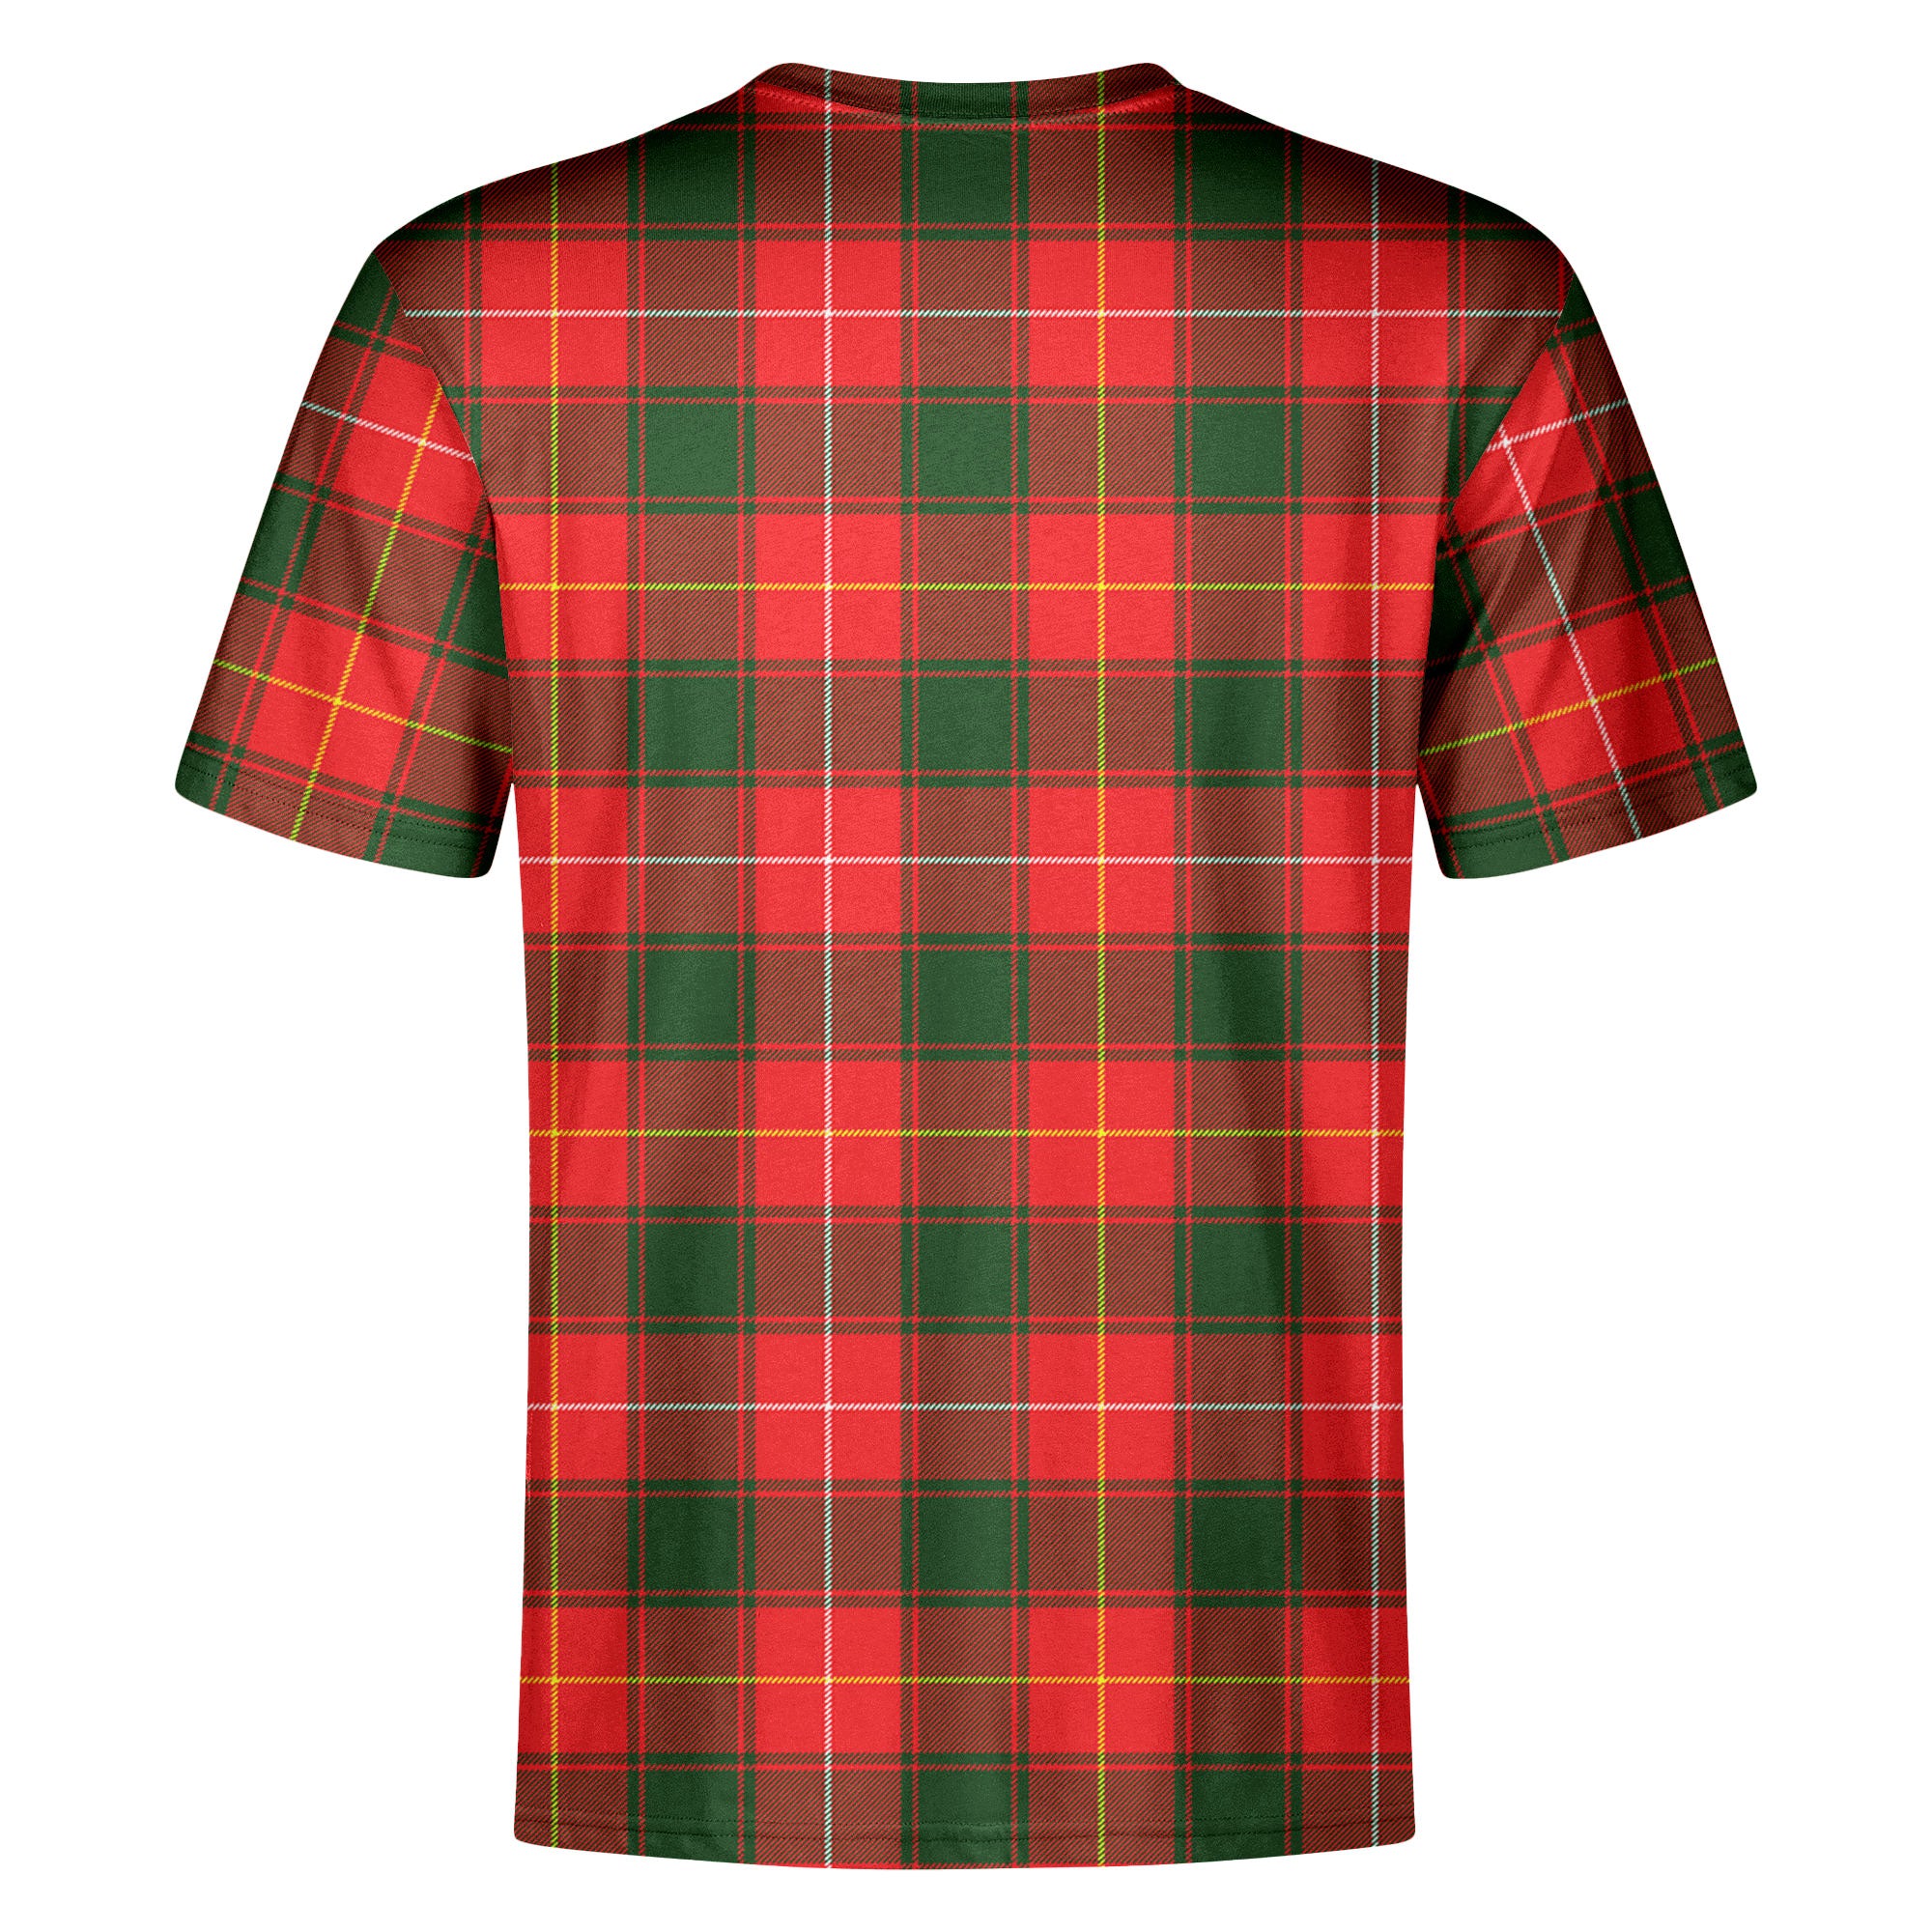 MacFie Tartan Crest T-shirt